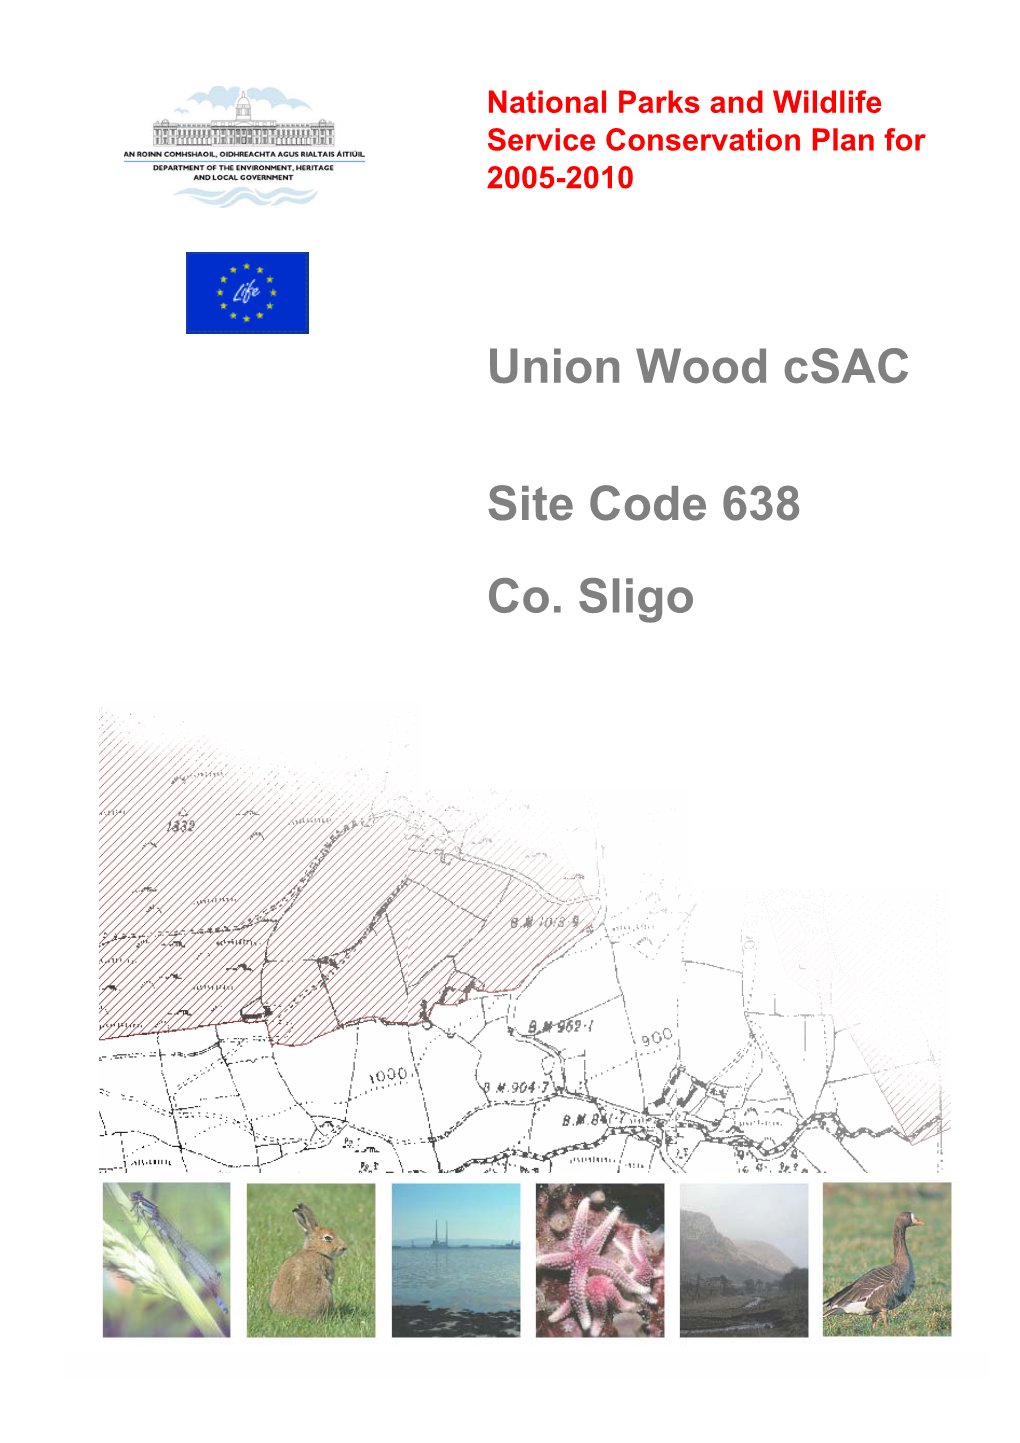 Union Wood Csac Site Code 638 Co. Sligo